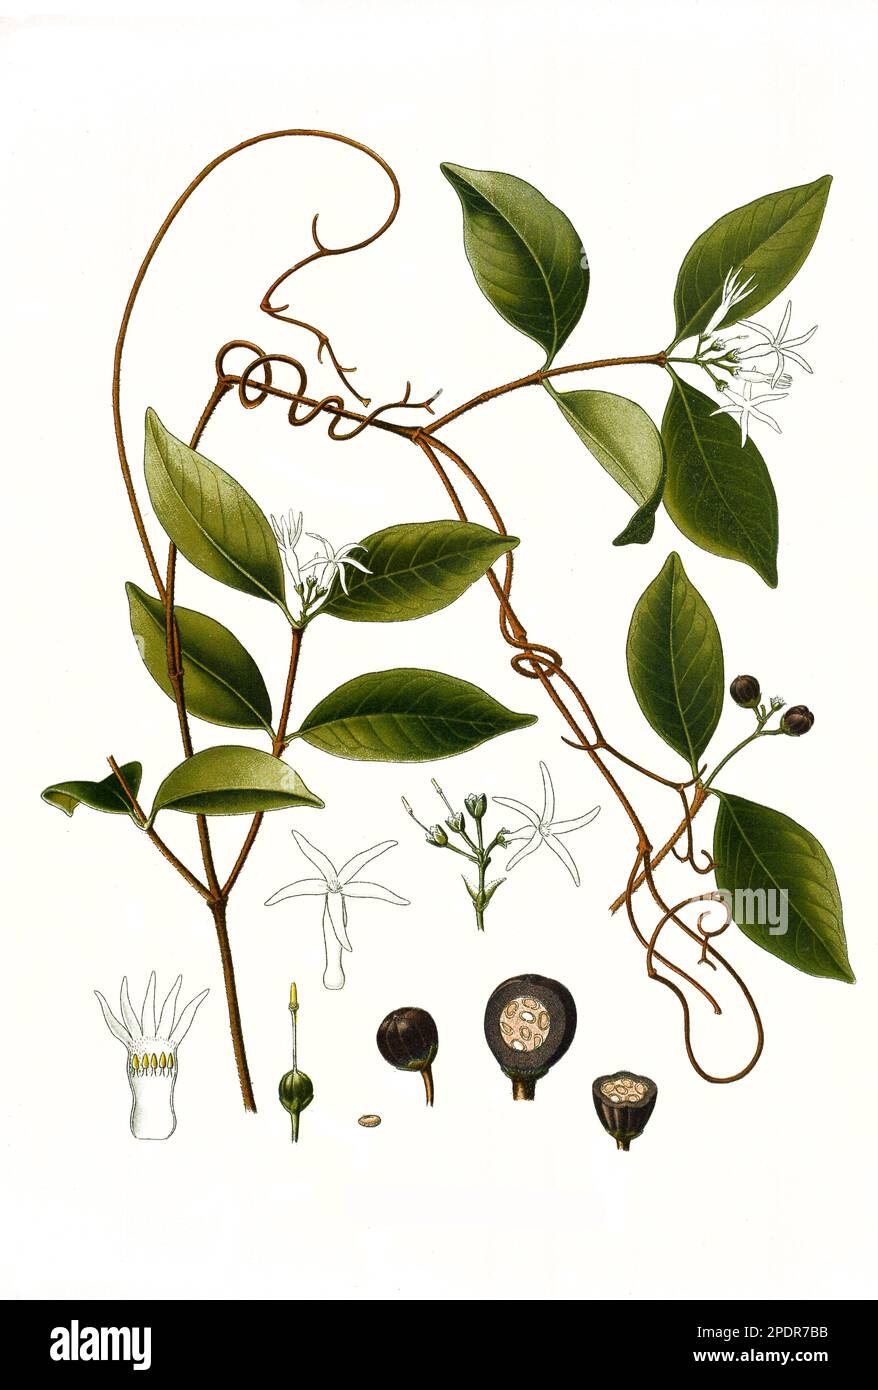 Heilpflanze, Landolphia watsonii, Rauvolfioideae, Historisch, digital restaurierte Reproduktion von einer Vorlage aus dem 18. Jahrhundert Stock Photo